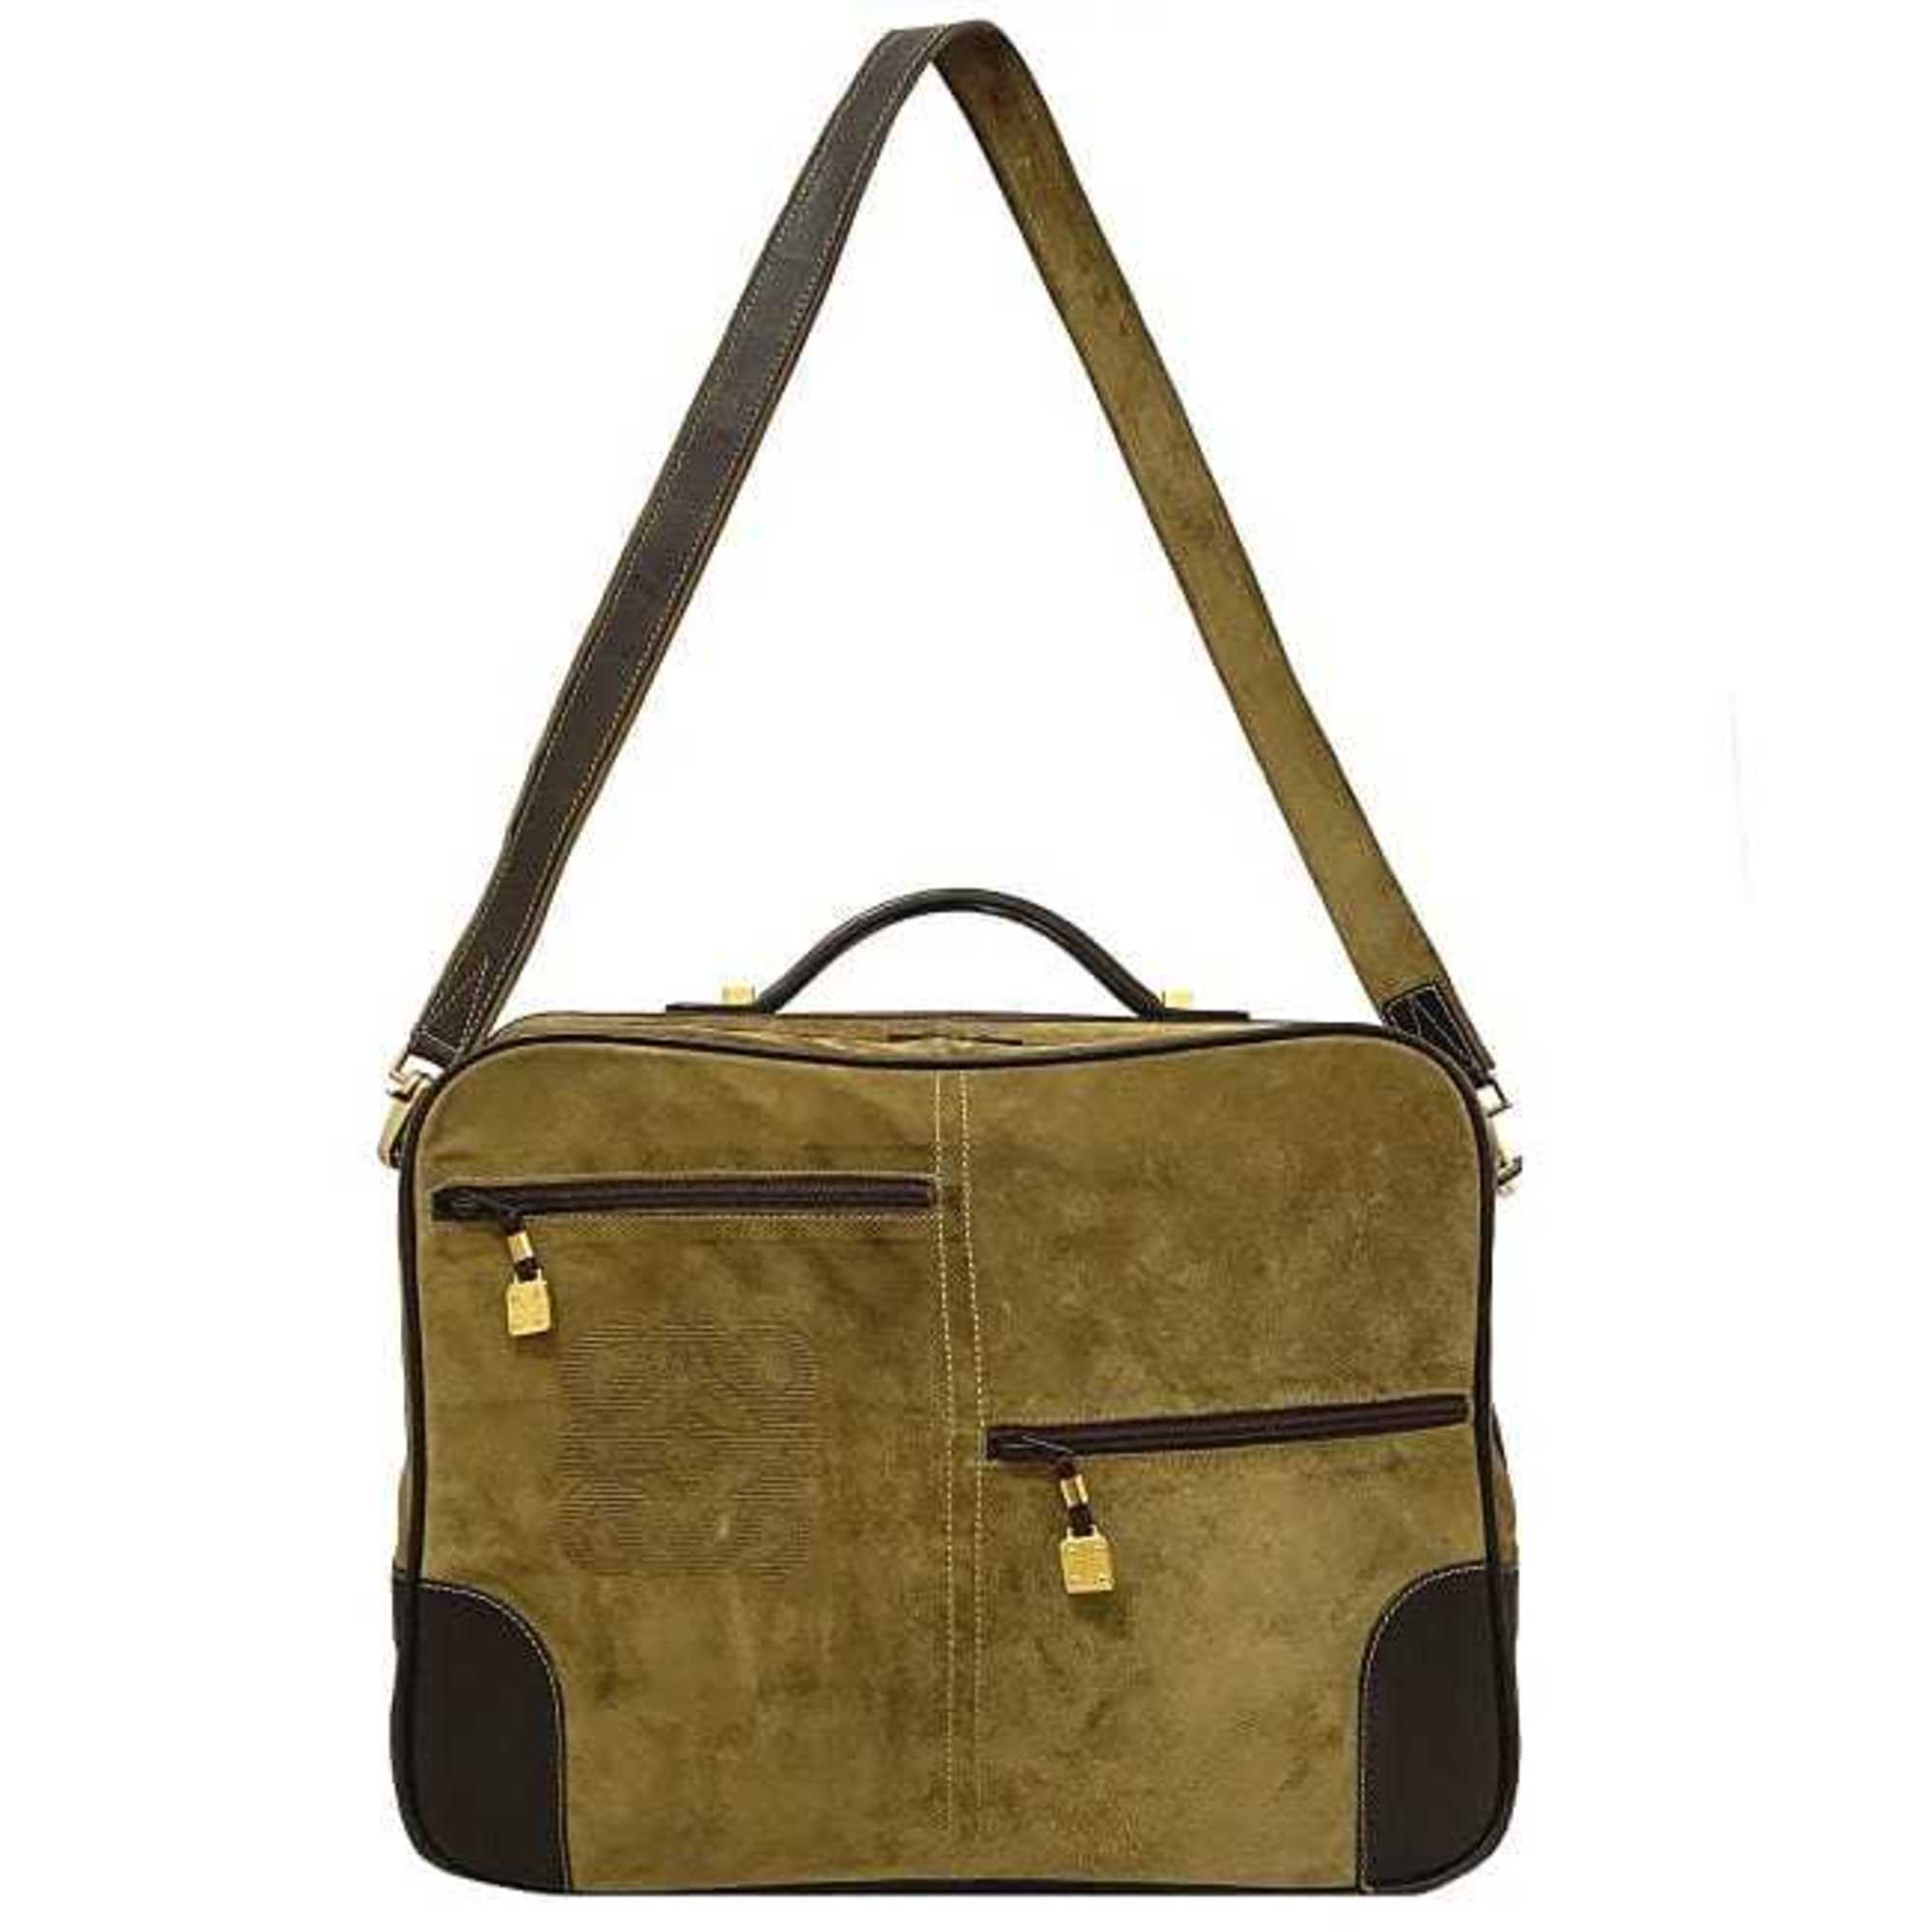 Loewe 2way Boston bag beige brown anagram suede leather LOEWE handbag shoulder